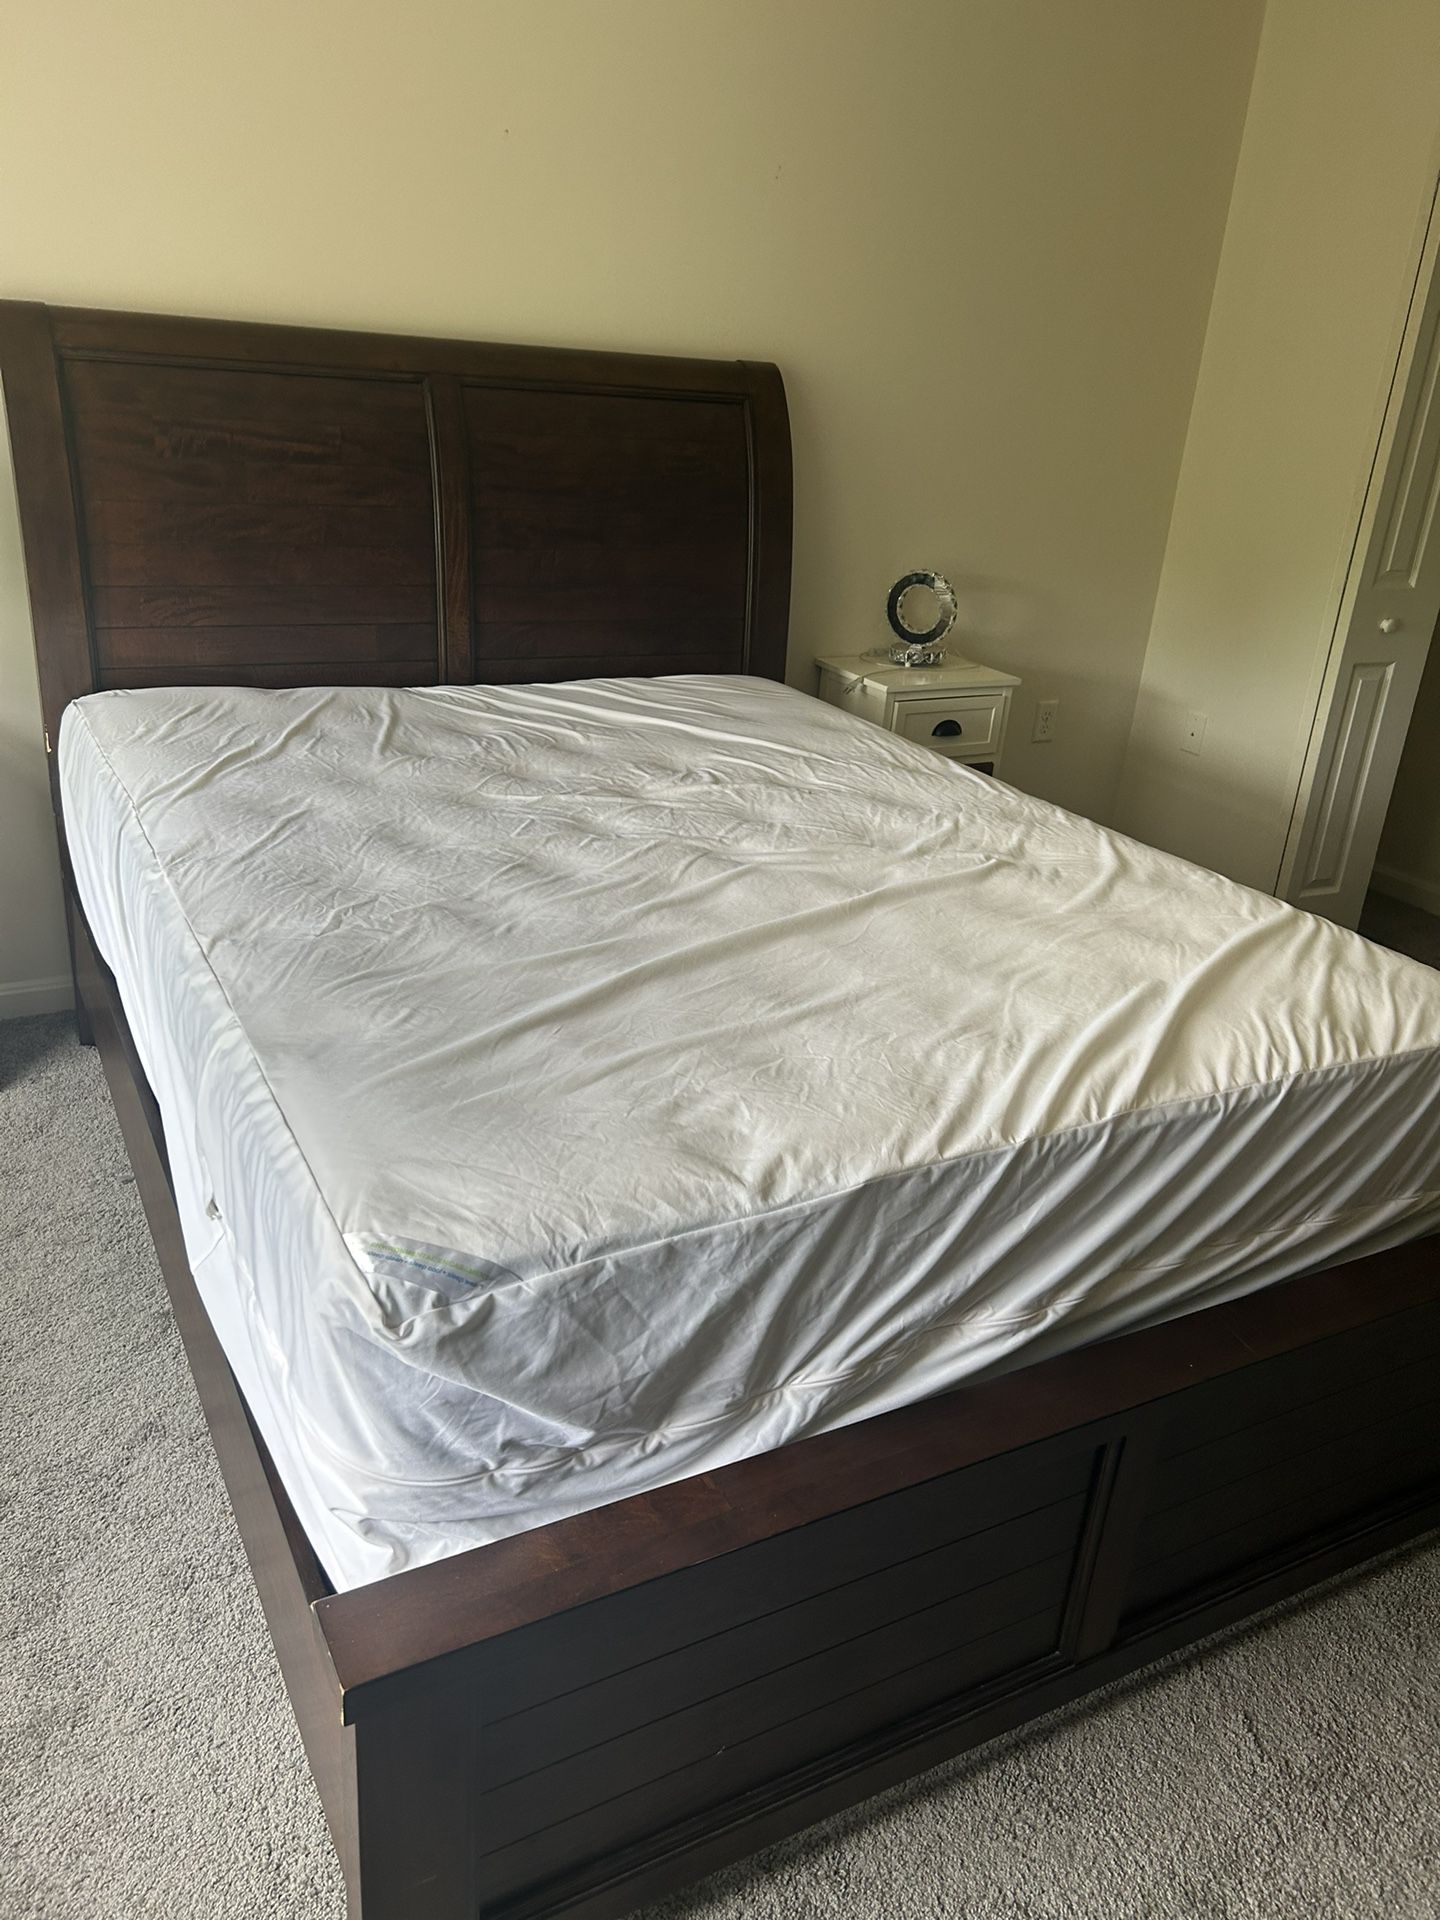 Queen Bed Room Set 